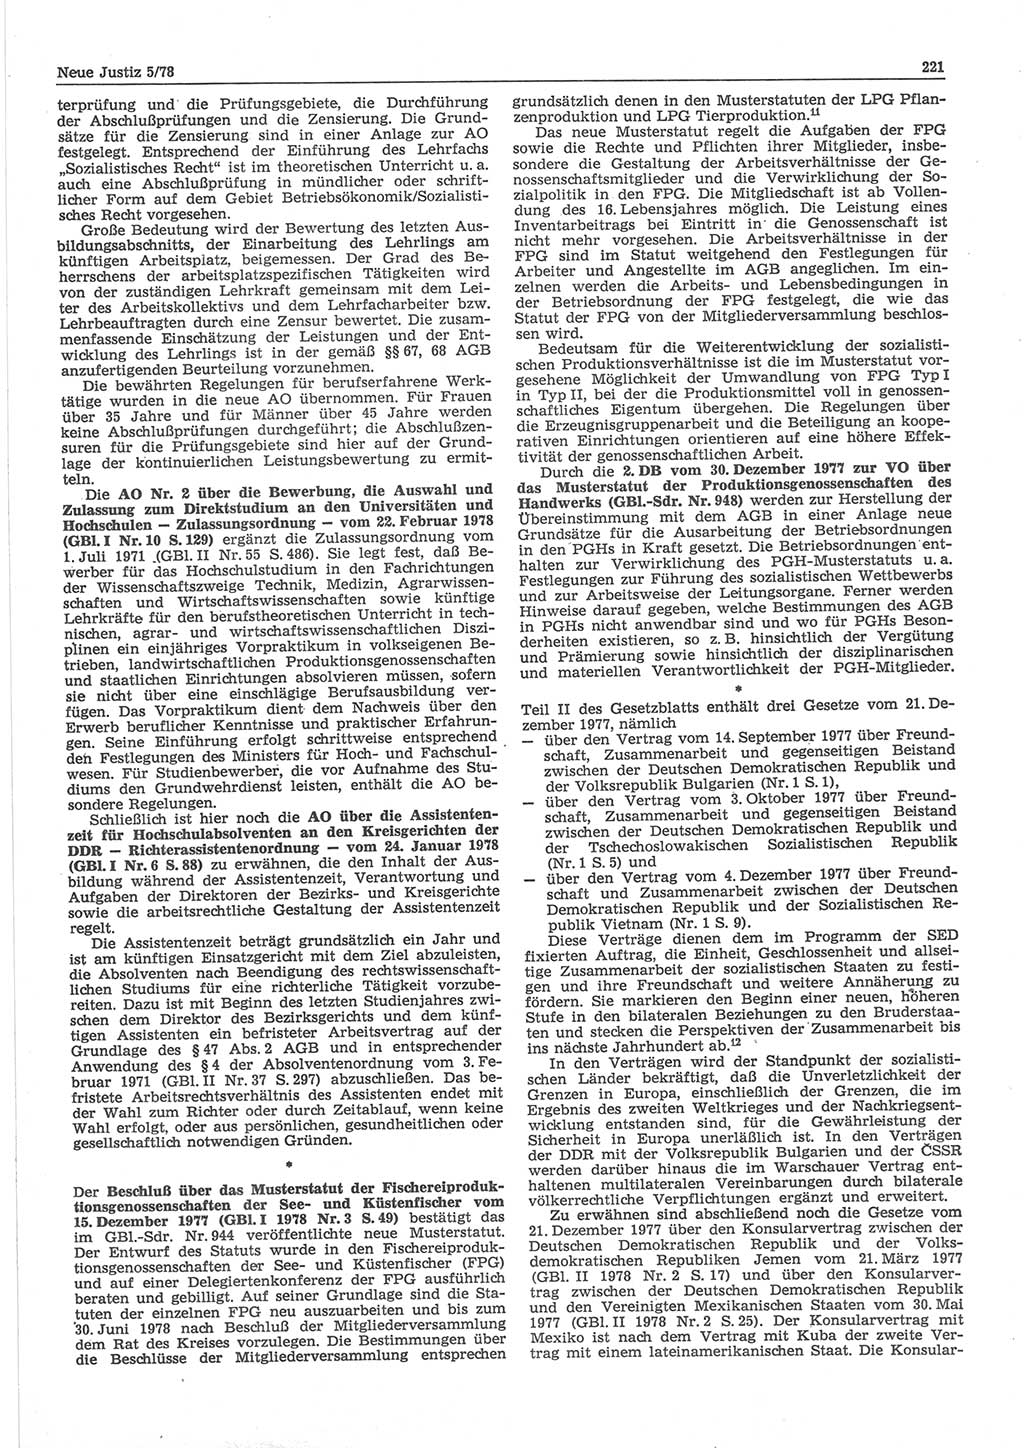 Neue Justiz (NJ), Zeitschrift für sozialistisches Recht und Gesetzlichkeit [Deutsche Demokratische Republik (DDR)], 32. Jahrgang 1978, Seite 221 (NJ DDR 1978, S. 221)